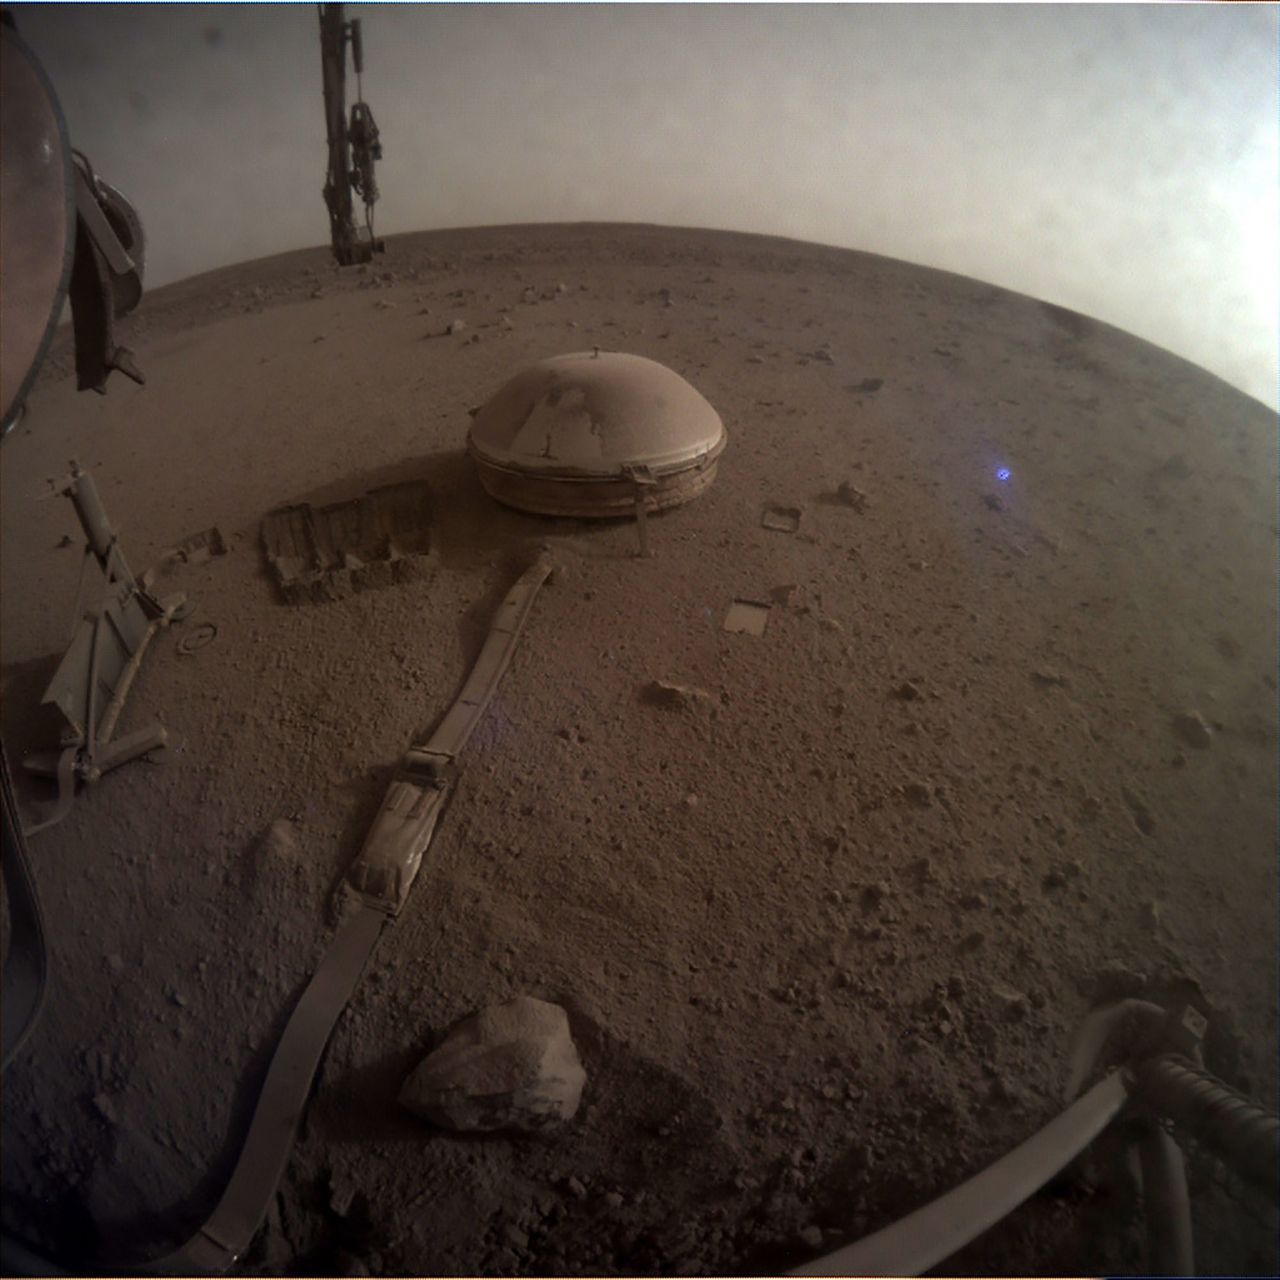 Łazik InSight wysłał nowe zdjęcia z Marsa. To być może jego ostatni materiał